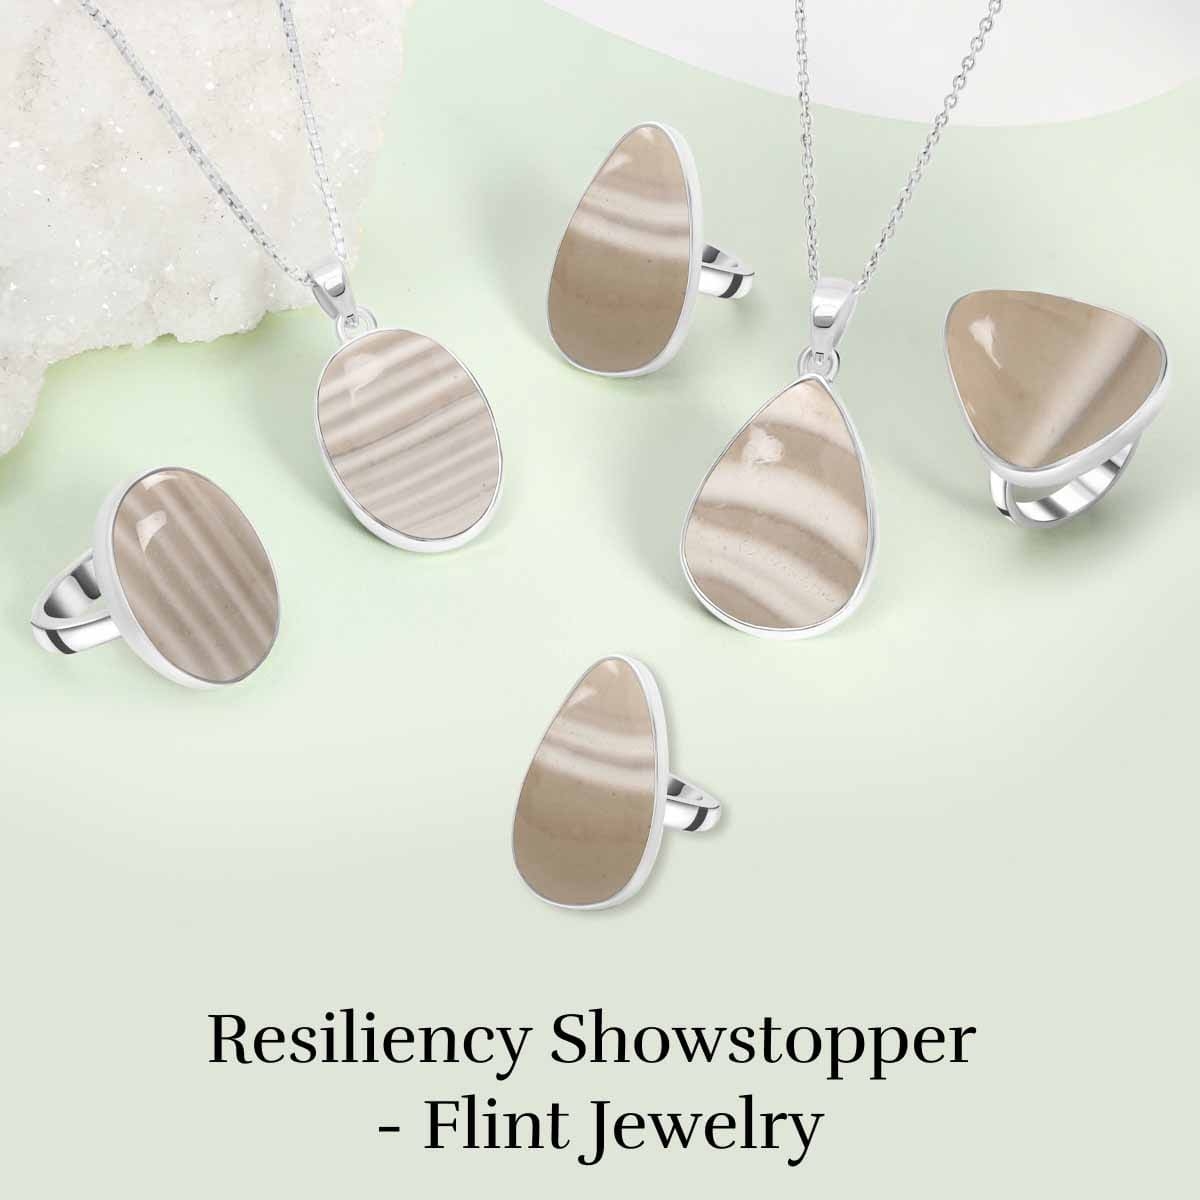 Flint Jewelry